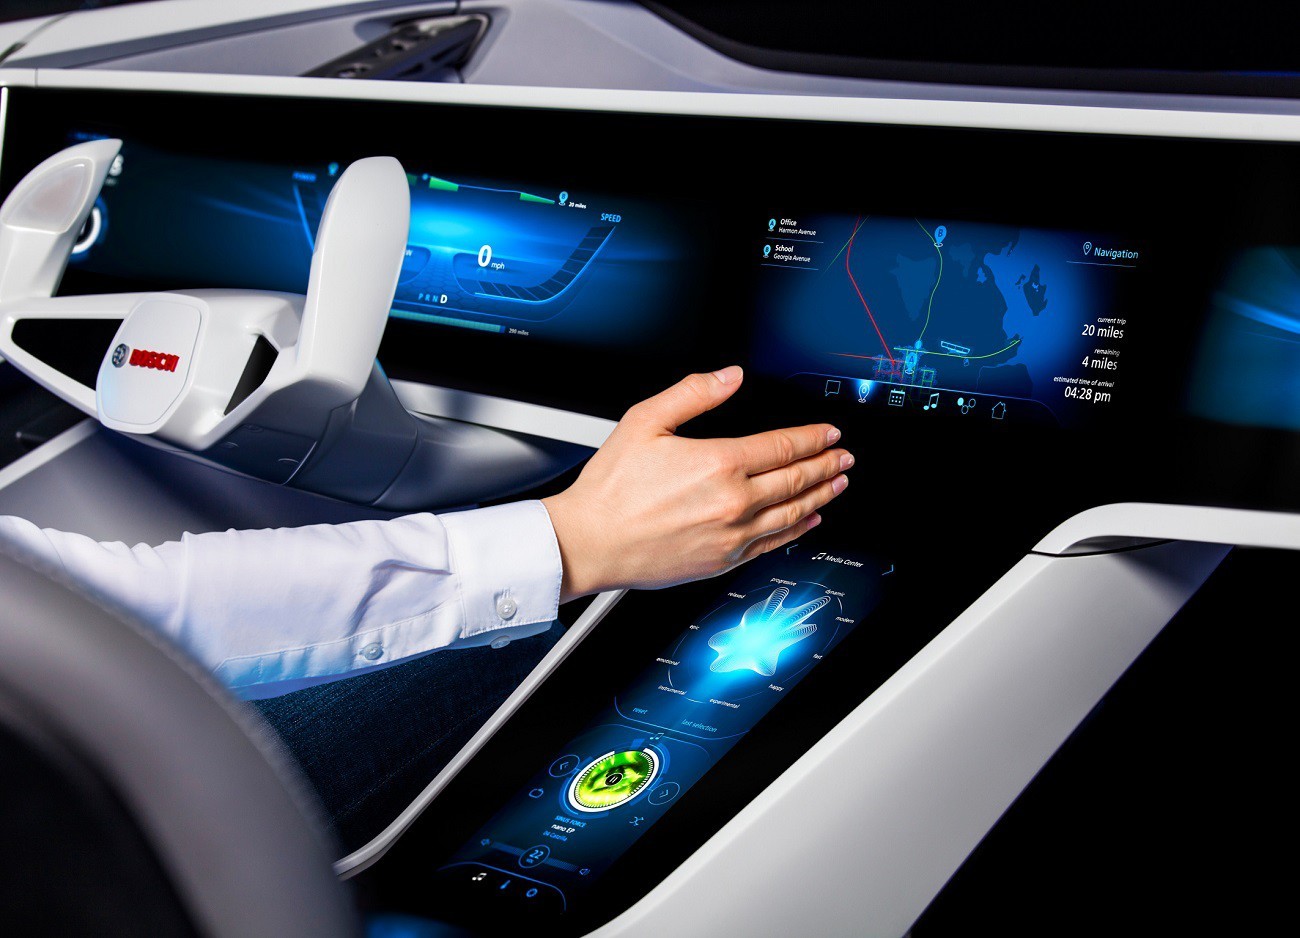 Технологические чудеса: Обзор автомобилей с умными системами связи и управления